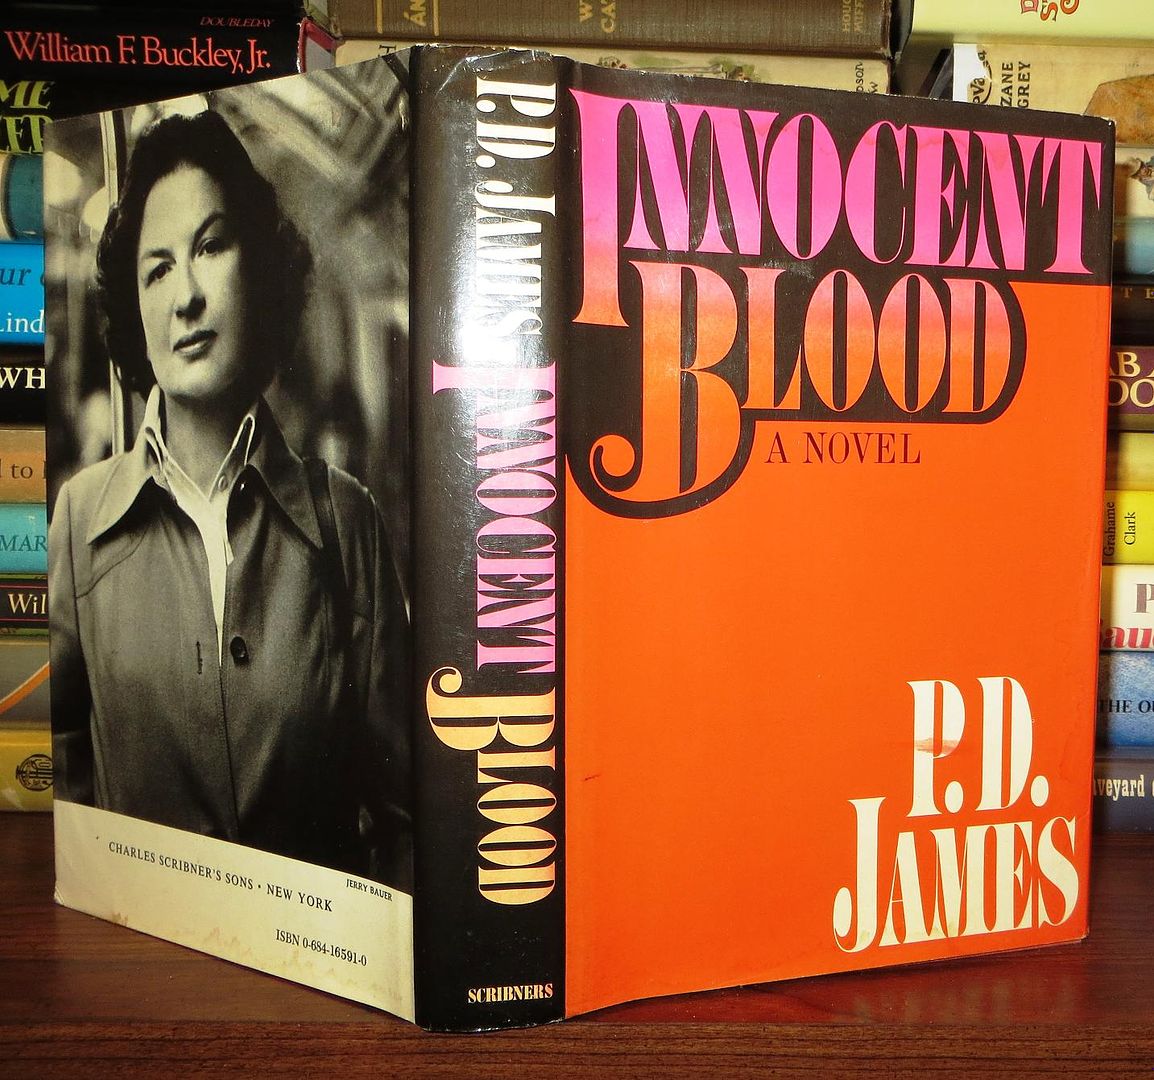 JAMES, P. D. - Innocent Blood